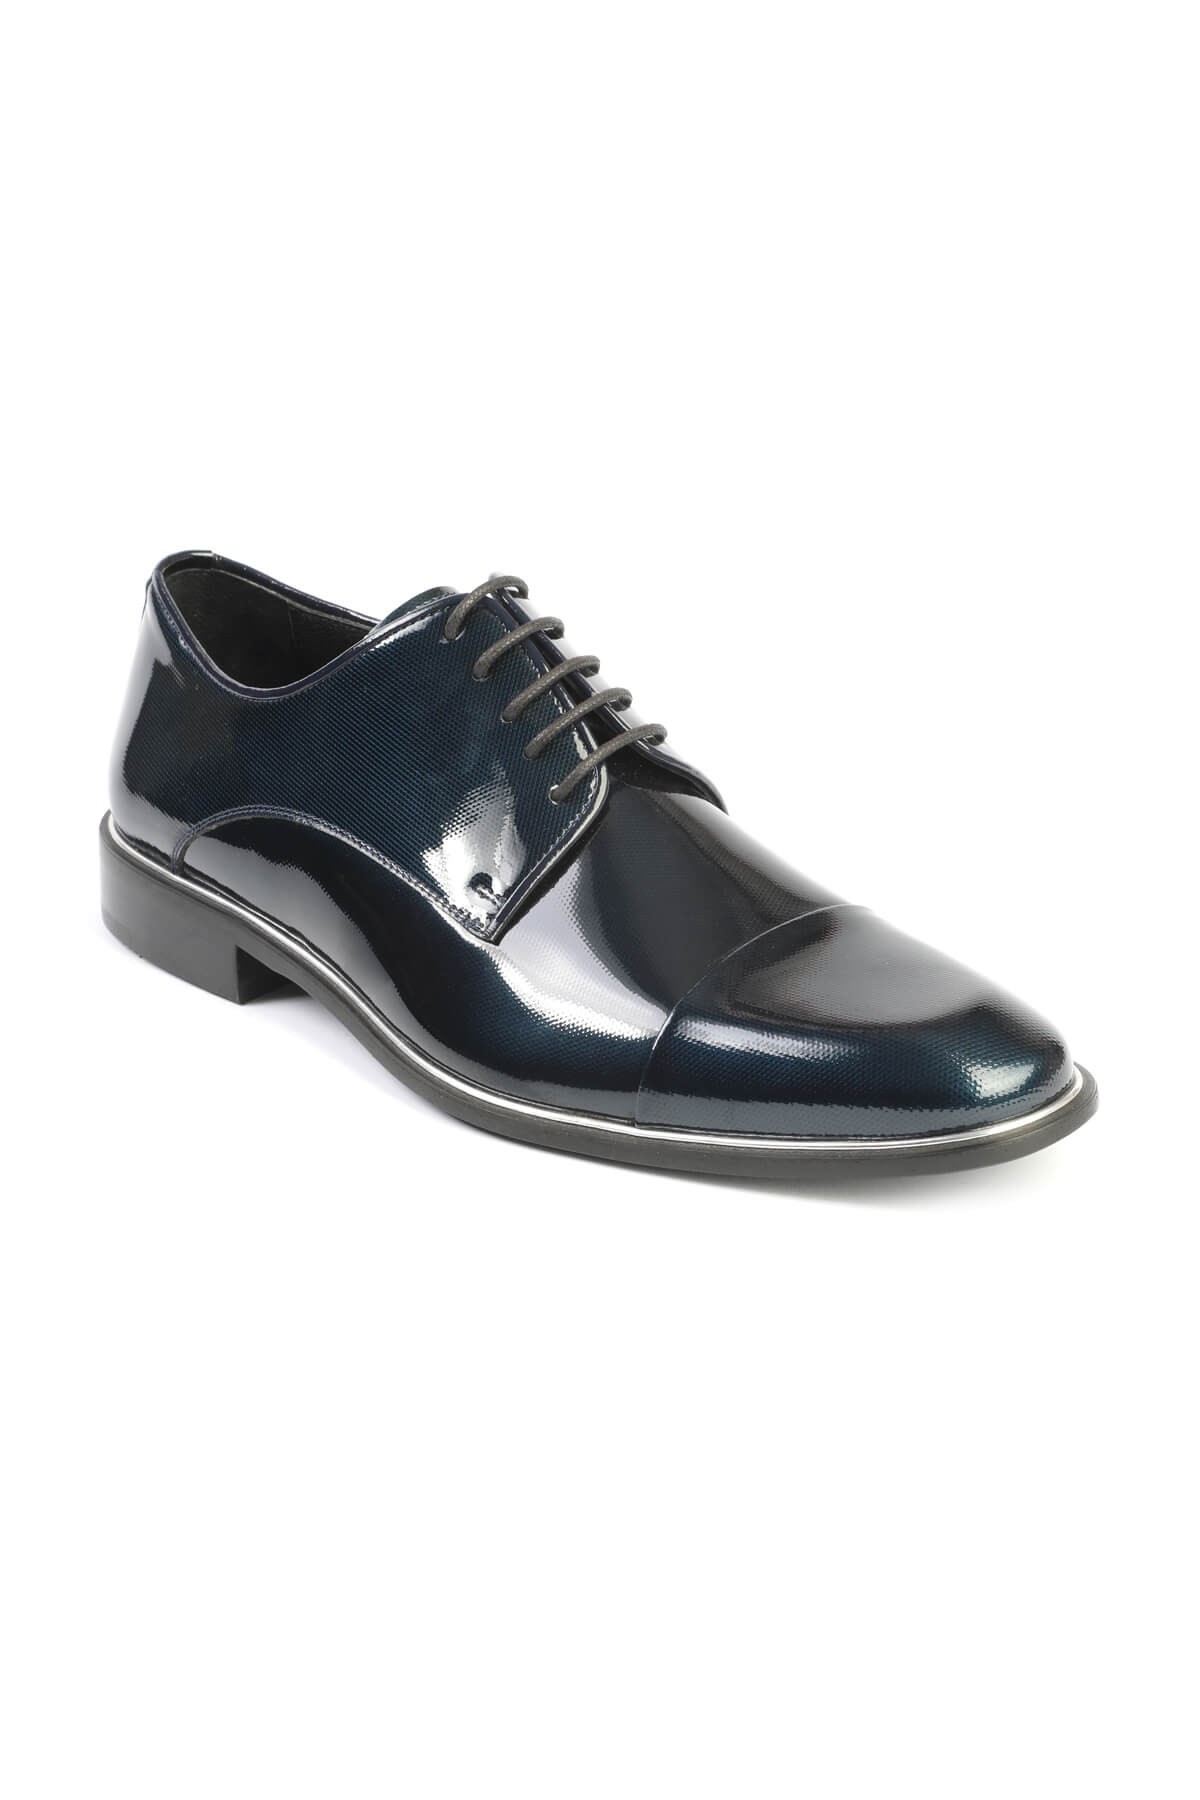 Libero 2474 Klasik Erkek Ayakkabı - LACİVERT